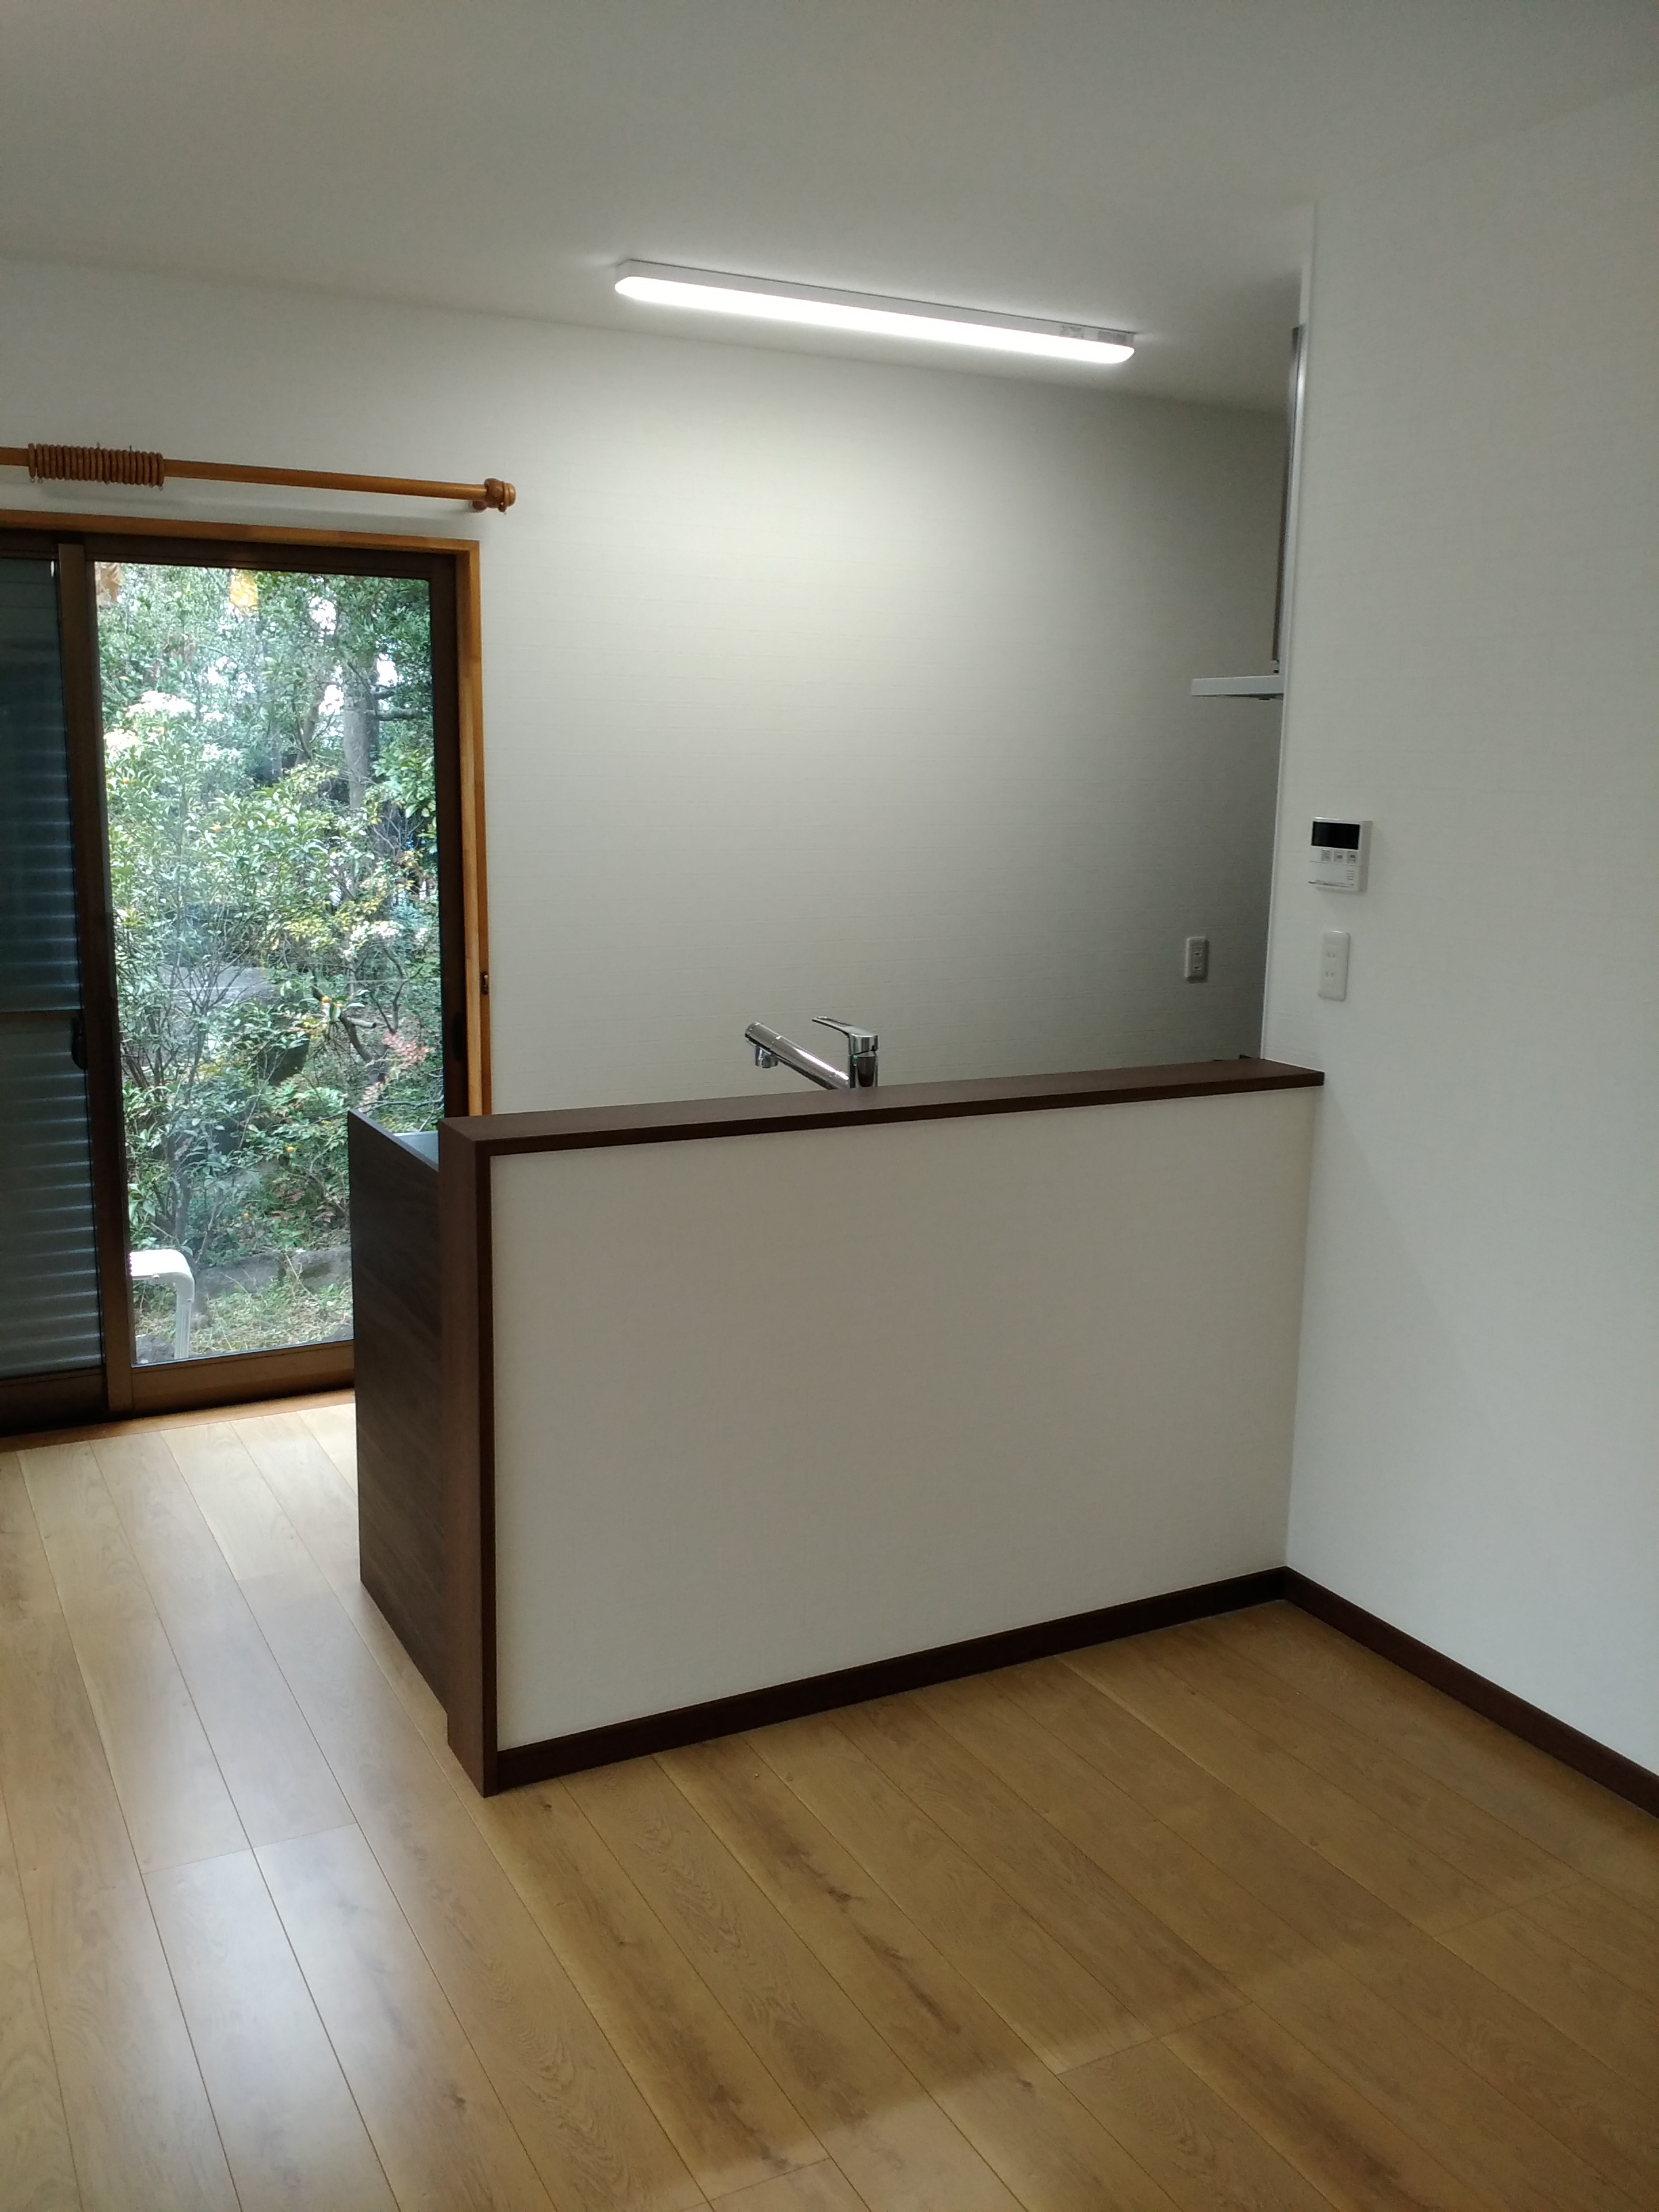 和室二間をLDKに内装リノベーション。千葉県栄町の戸建住宅。　イメージ08